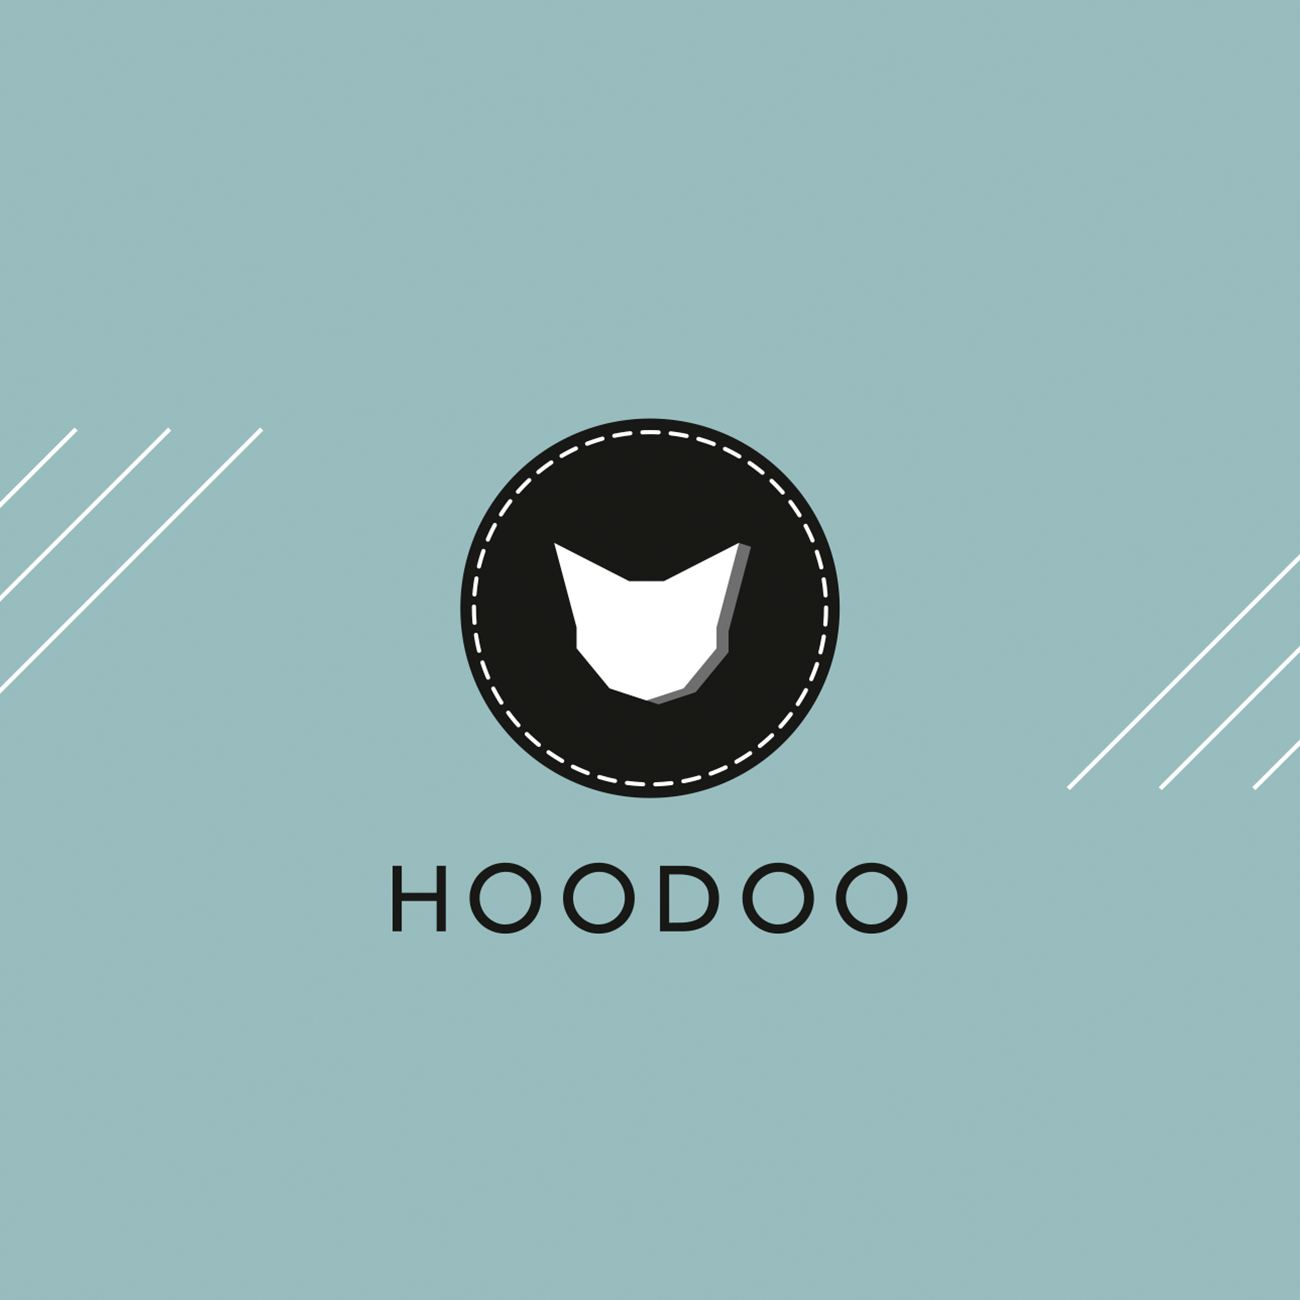 Logo de la marque de vêtements hoodoo